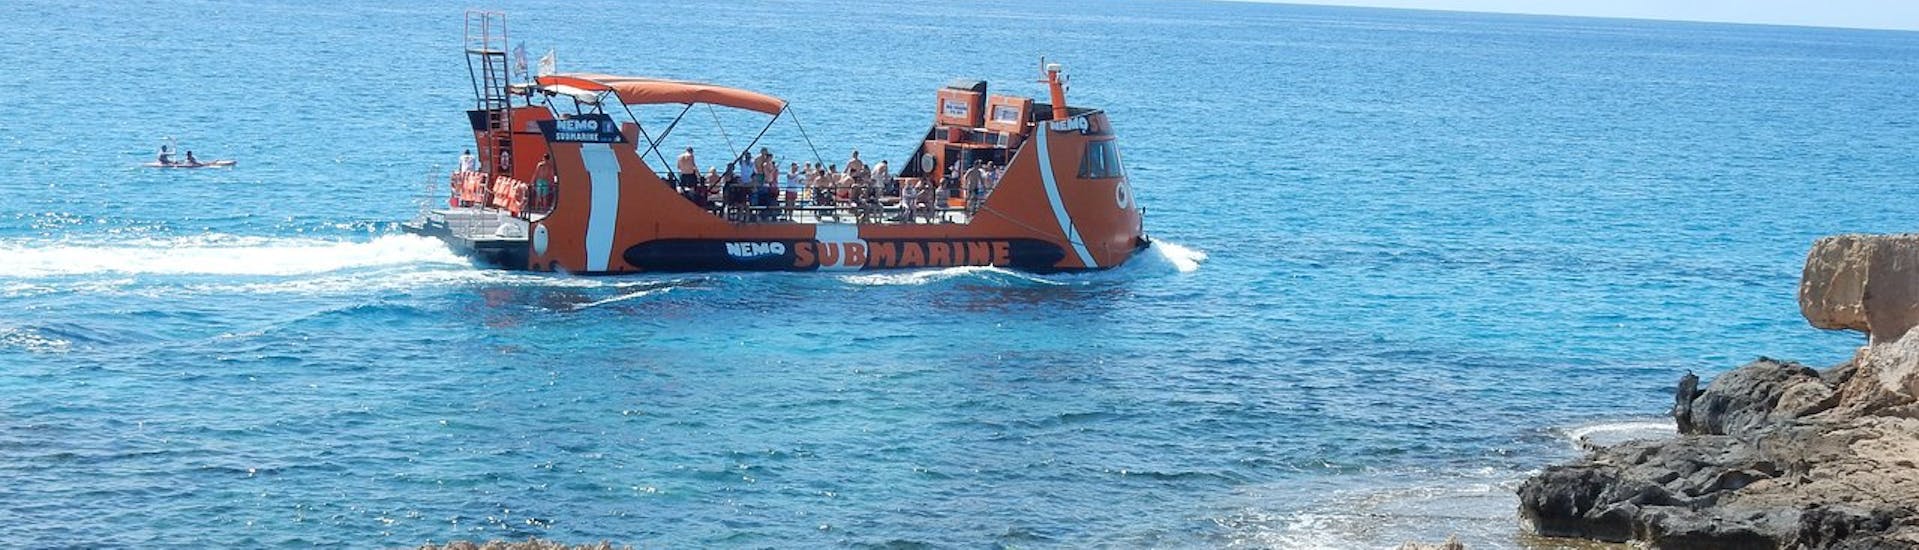 El barco visto desde una cueva durante su viaje por la costa de Ayia Napa con Nemo Submarine.